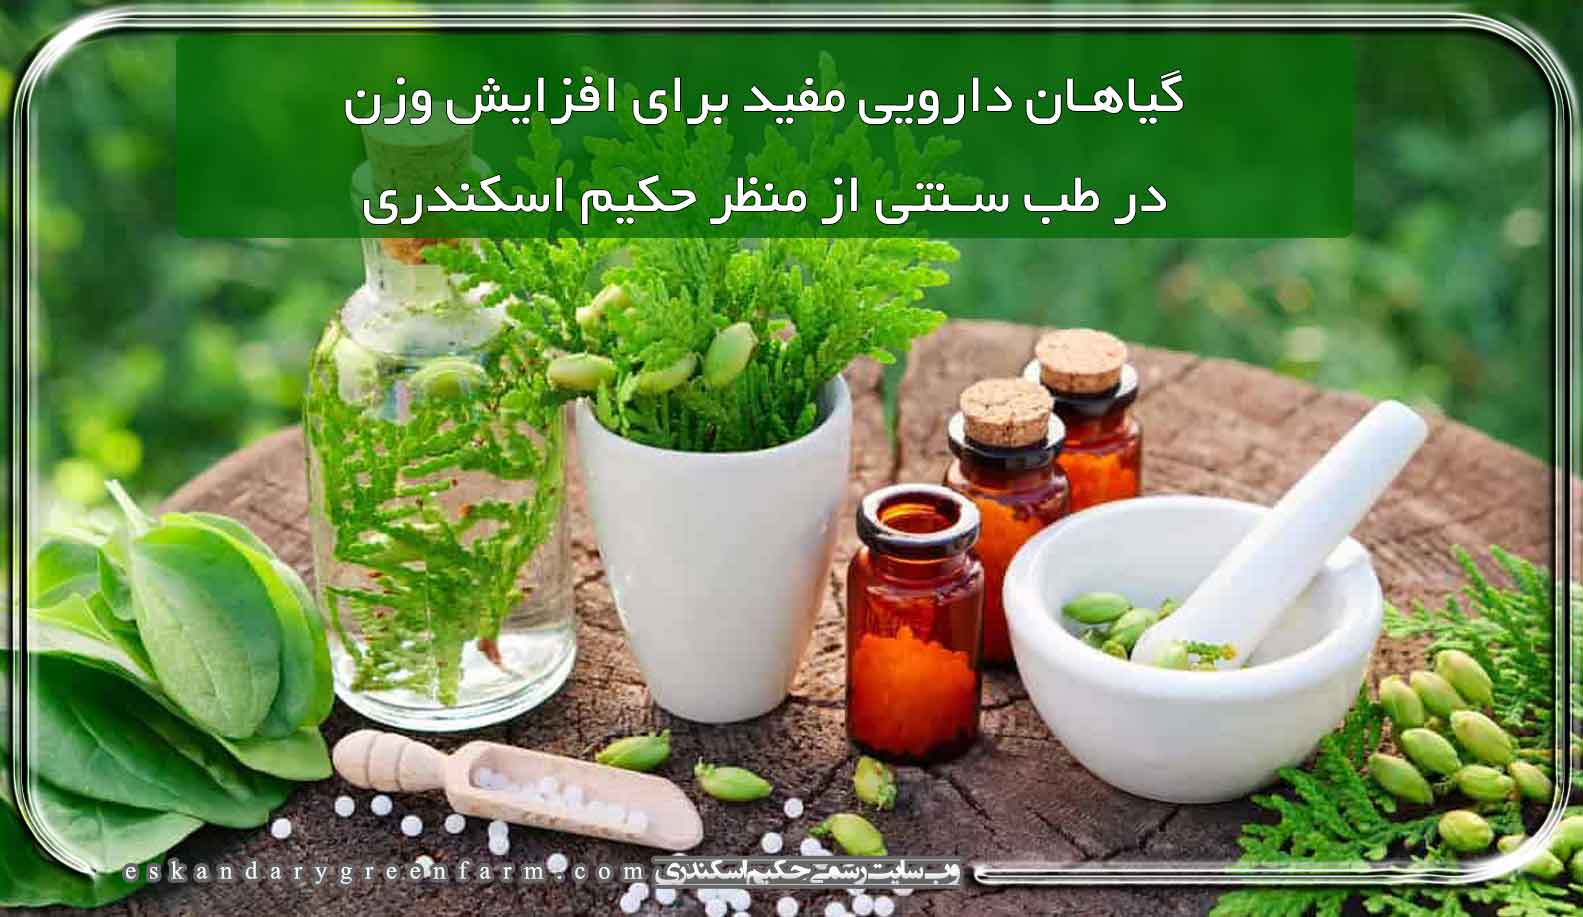 گیاهان دارویی مفید برای افزایش وزن از منظر حکیم اسکندری